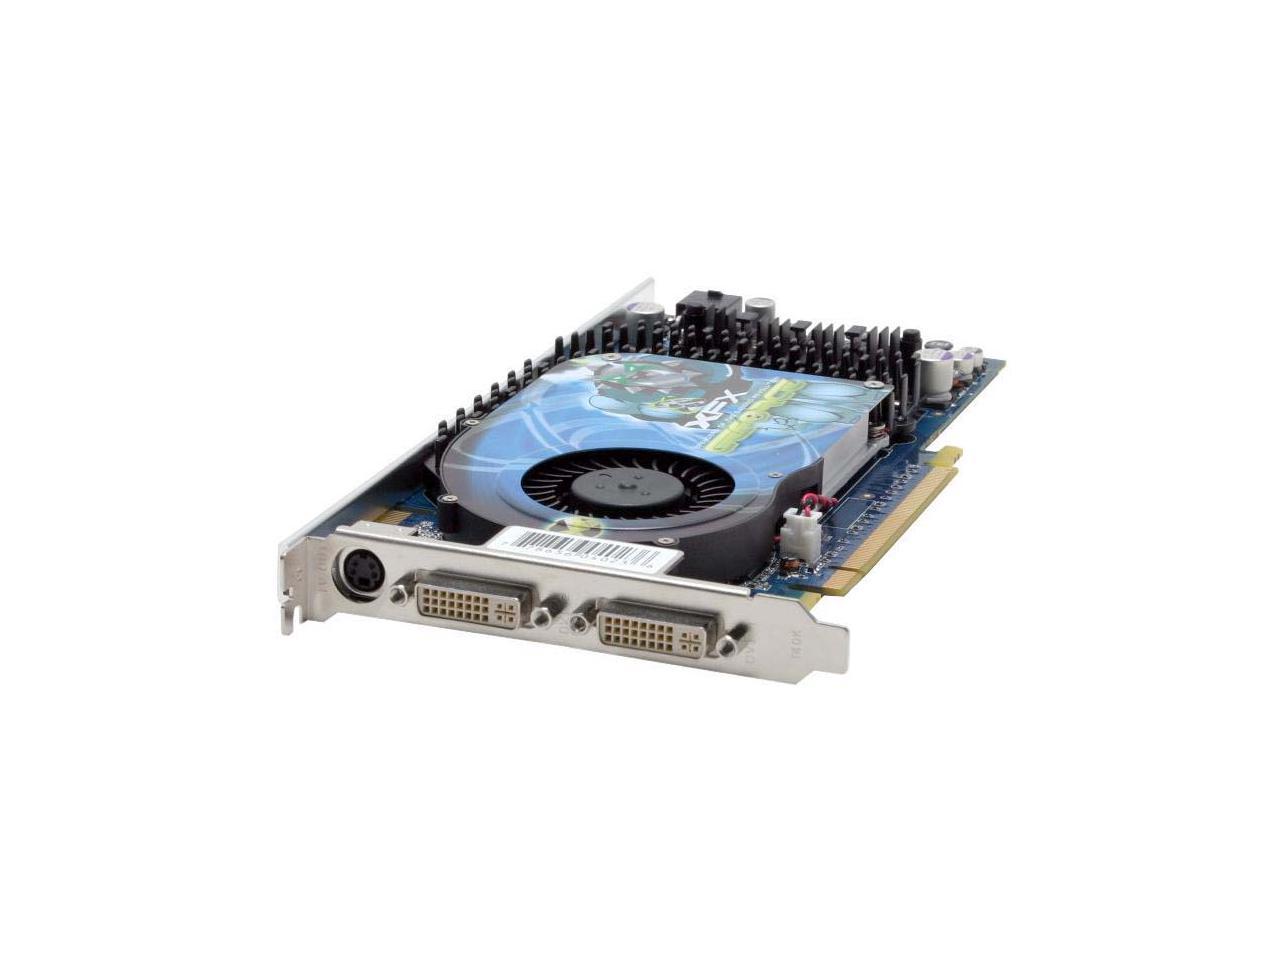 XFX PV-T45G-UDF3 NVIDIA GeForce 6800 GT 256MB GDDR3 256-Bit PCIe x16 Video Card